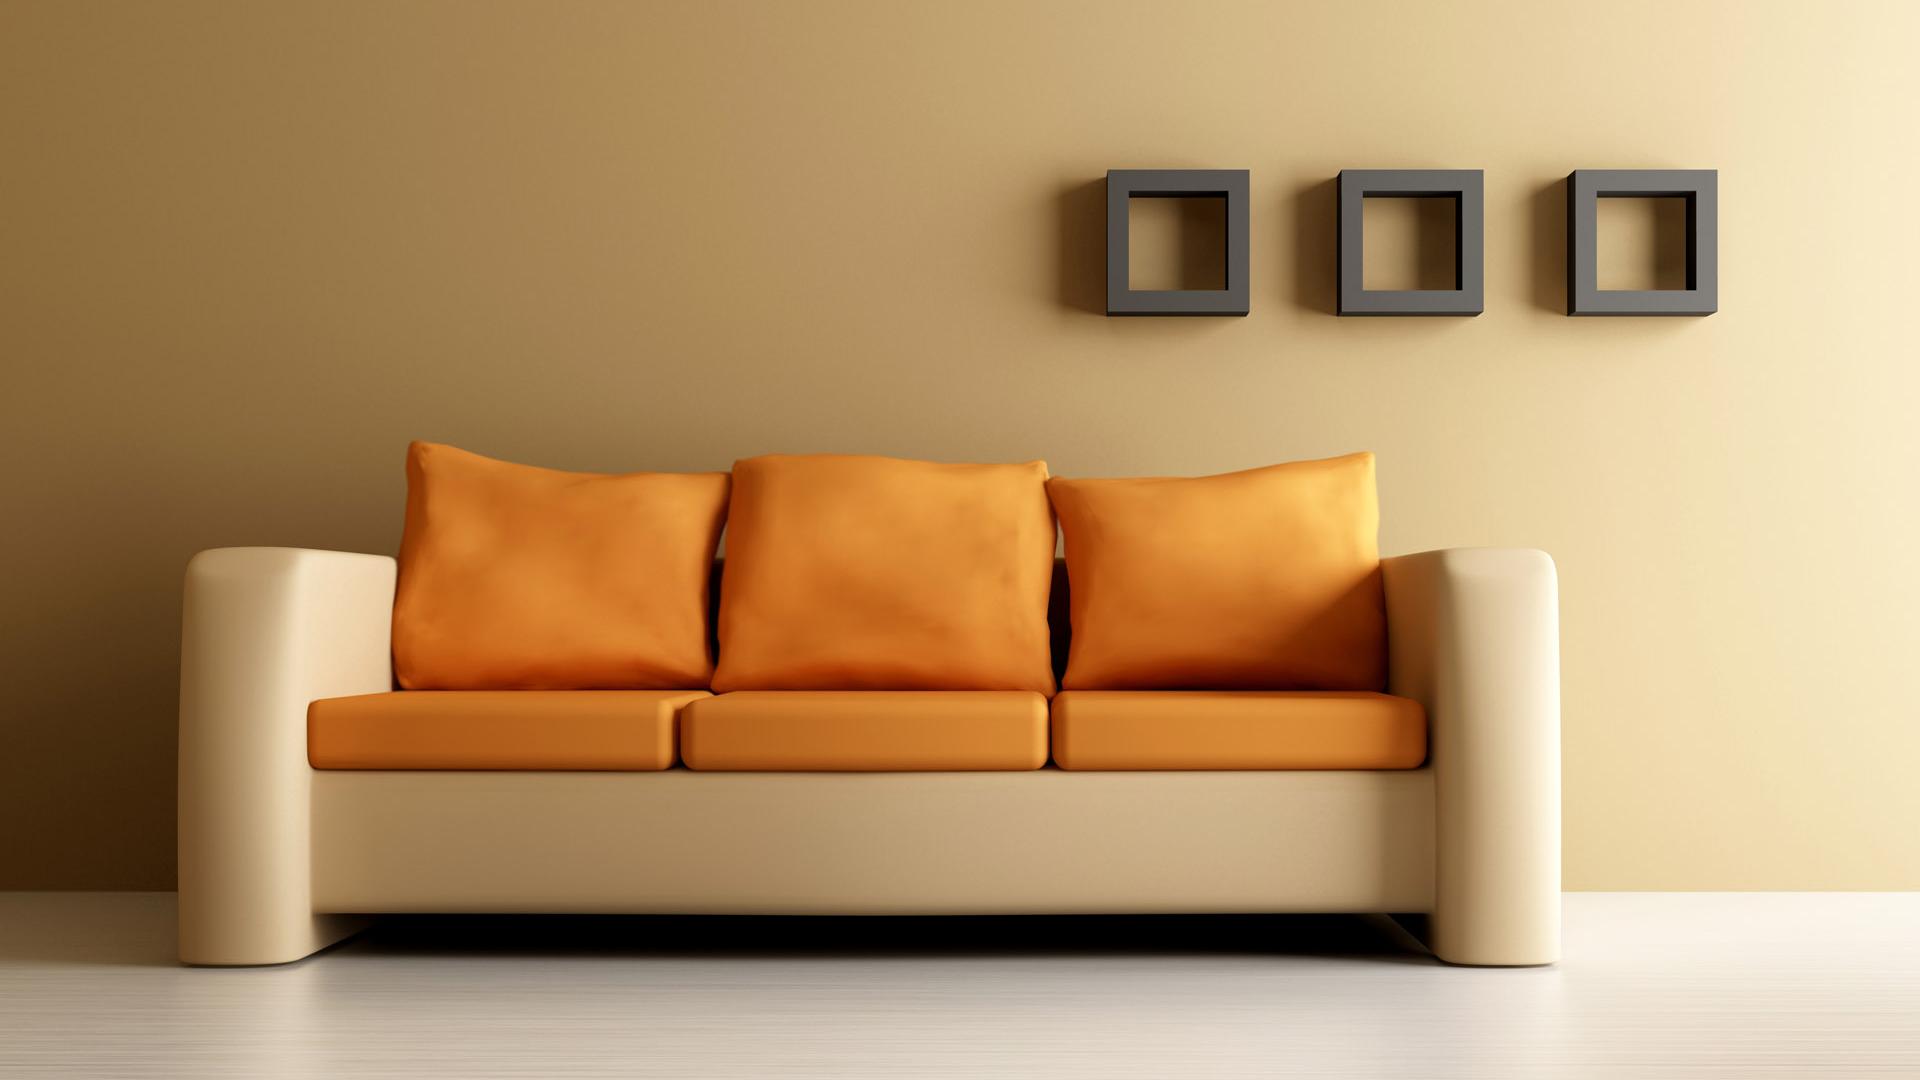 50+] Interior Design HD Wallpapers - WallpaperSafari